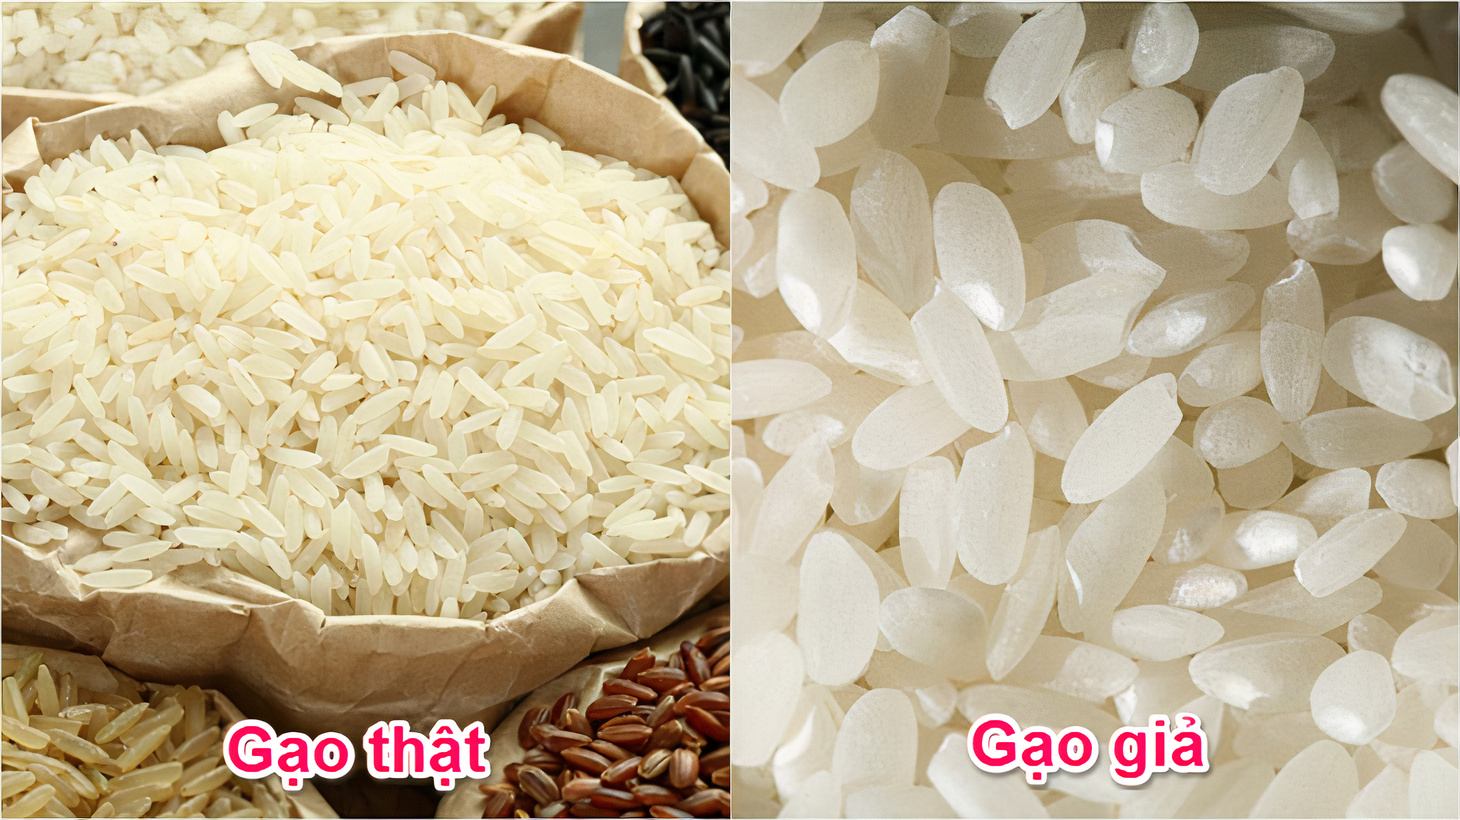 Nếu gạo trắng đẹp hoàn hảo, có thể hạt đã bị tẩm hóa chất